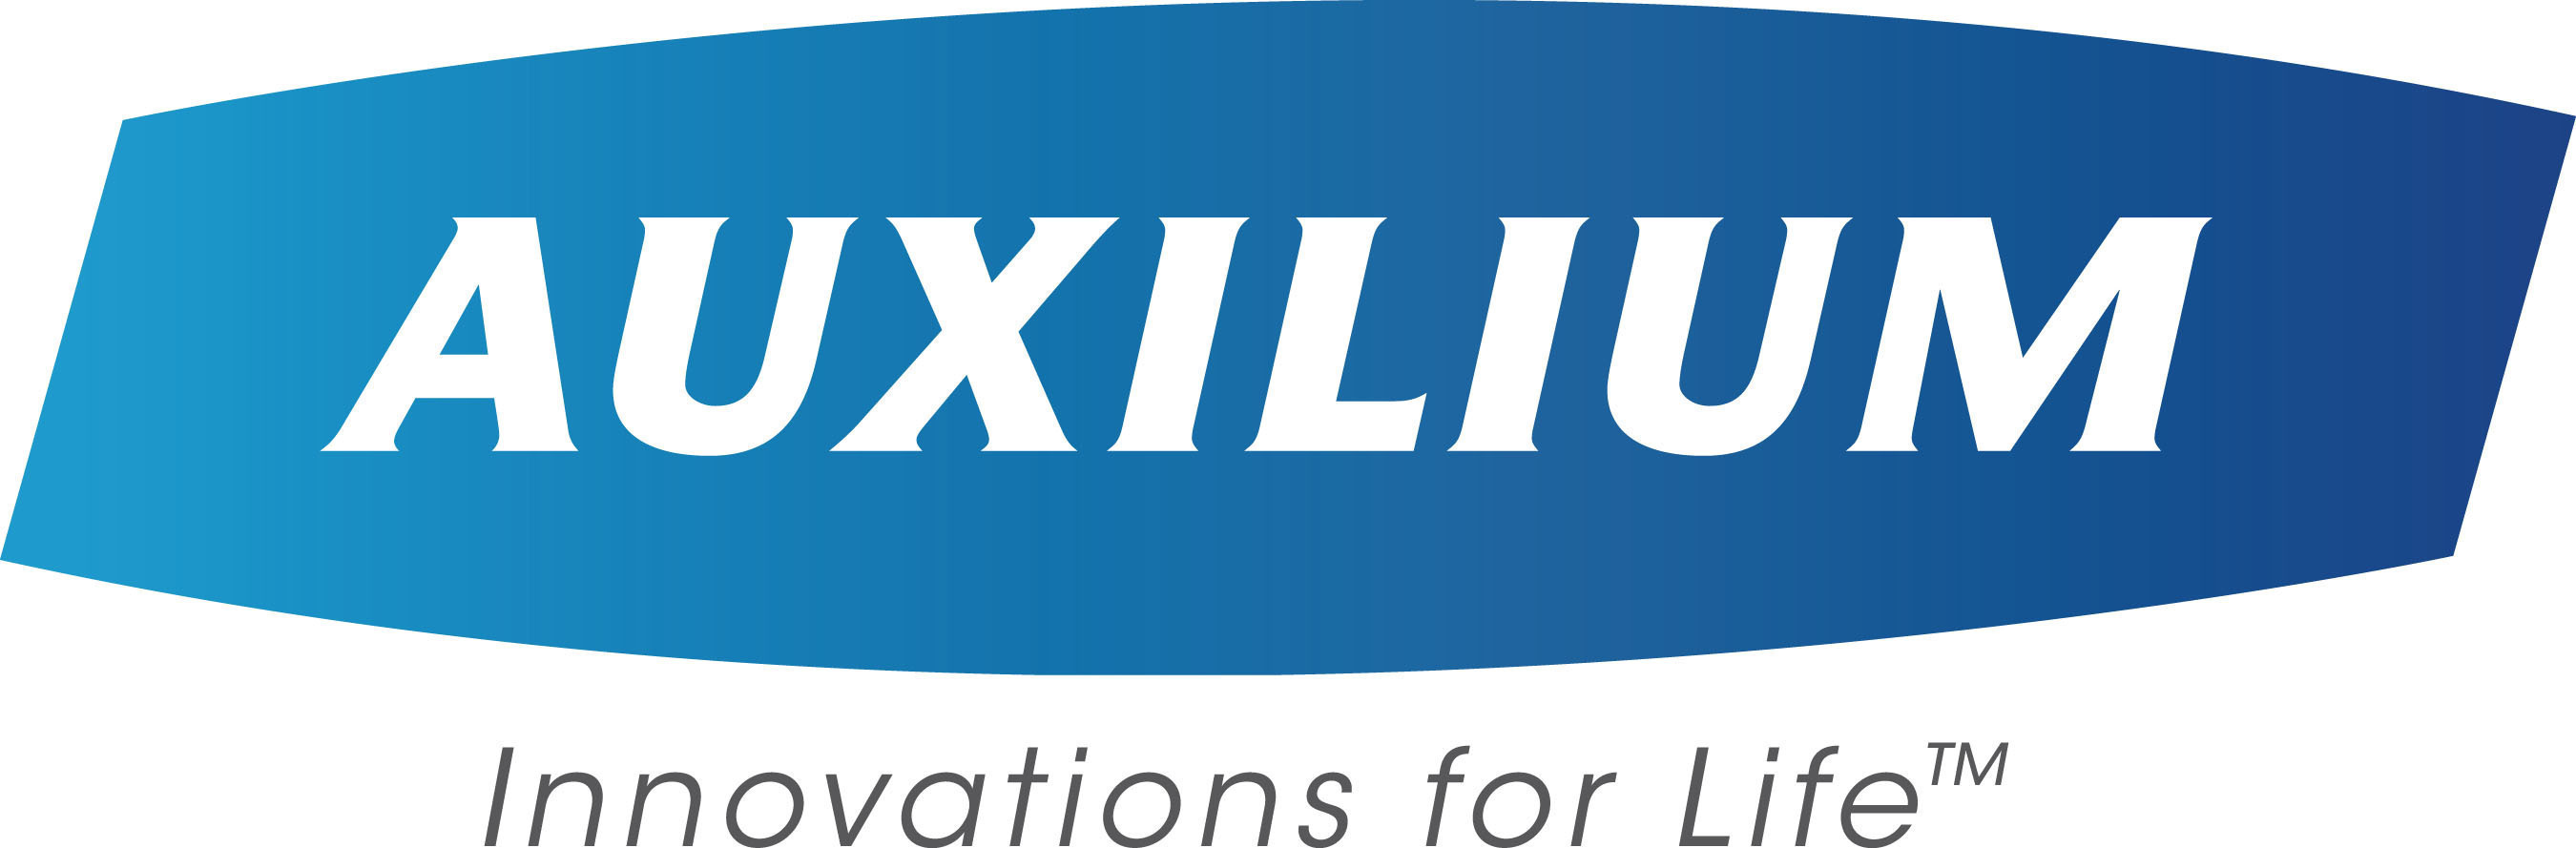 Auxilium Pharmaceuticals, Inc. Logo. (PRNewsFoto/Auxilium Pharmaceuticals, Inc.) (PRNewsFoto/)